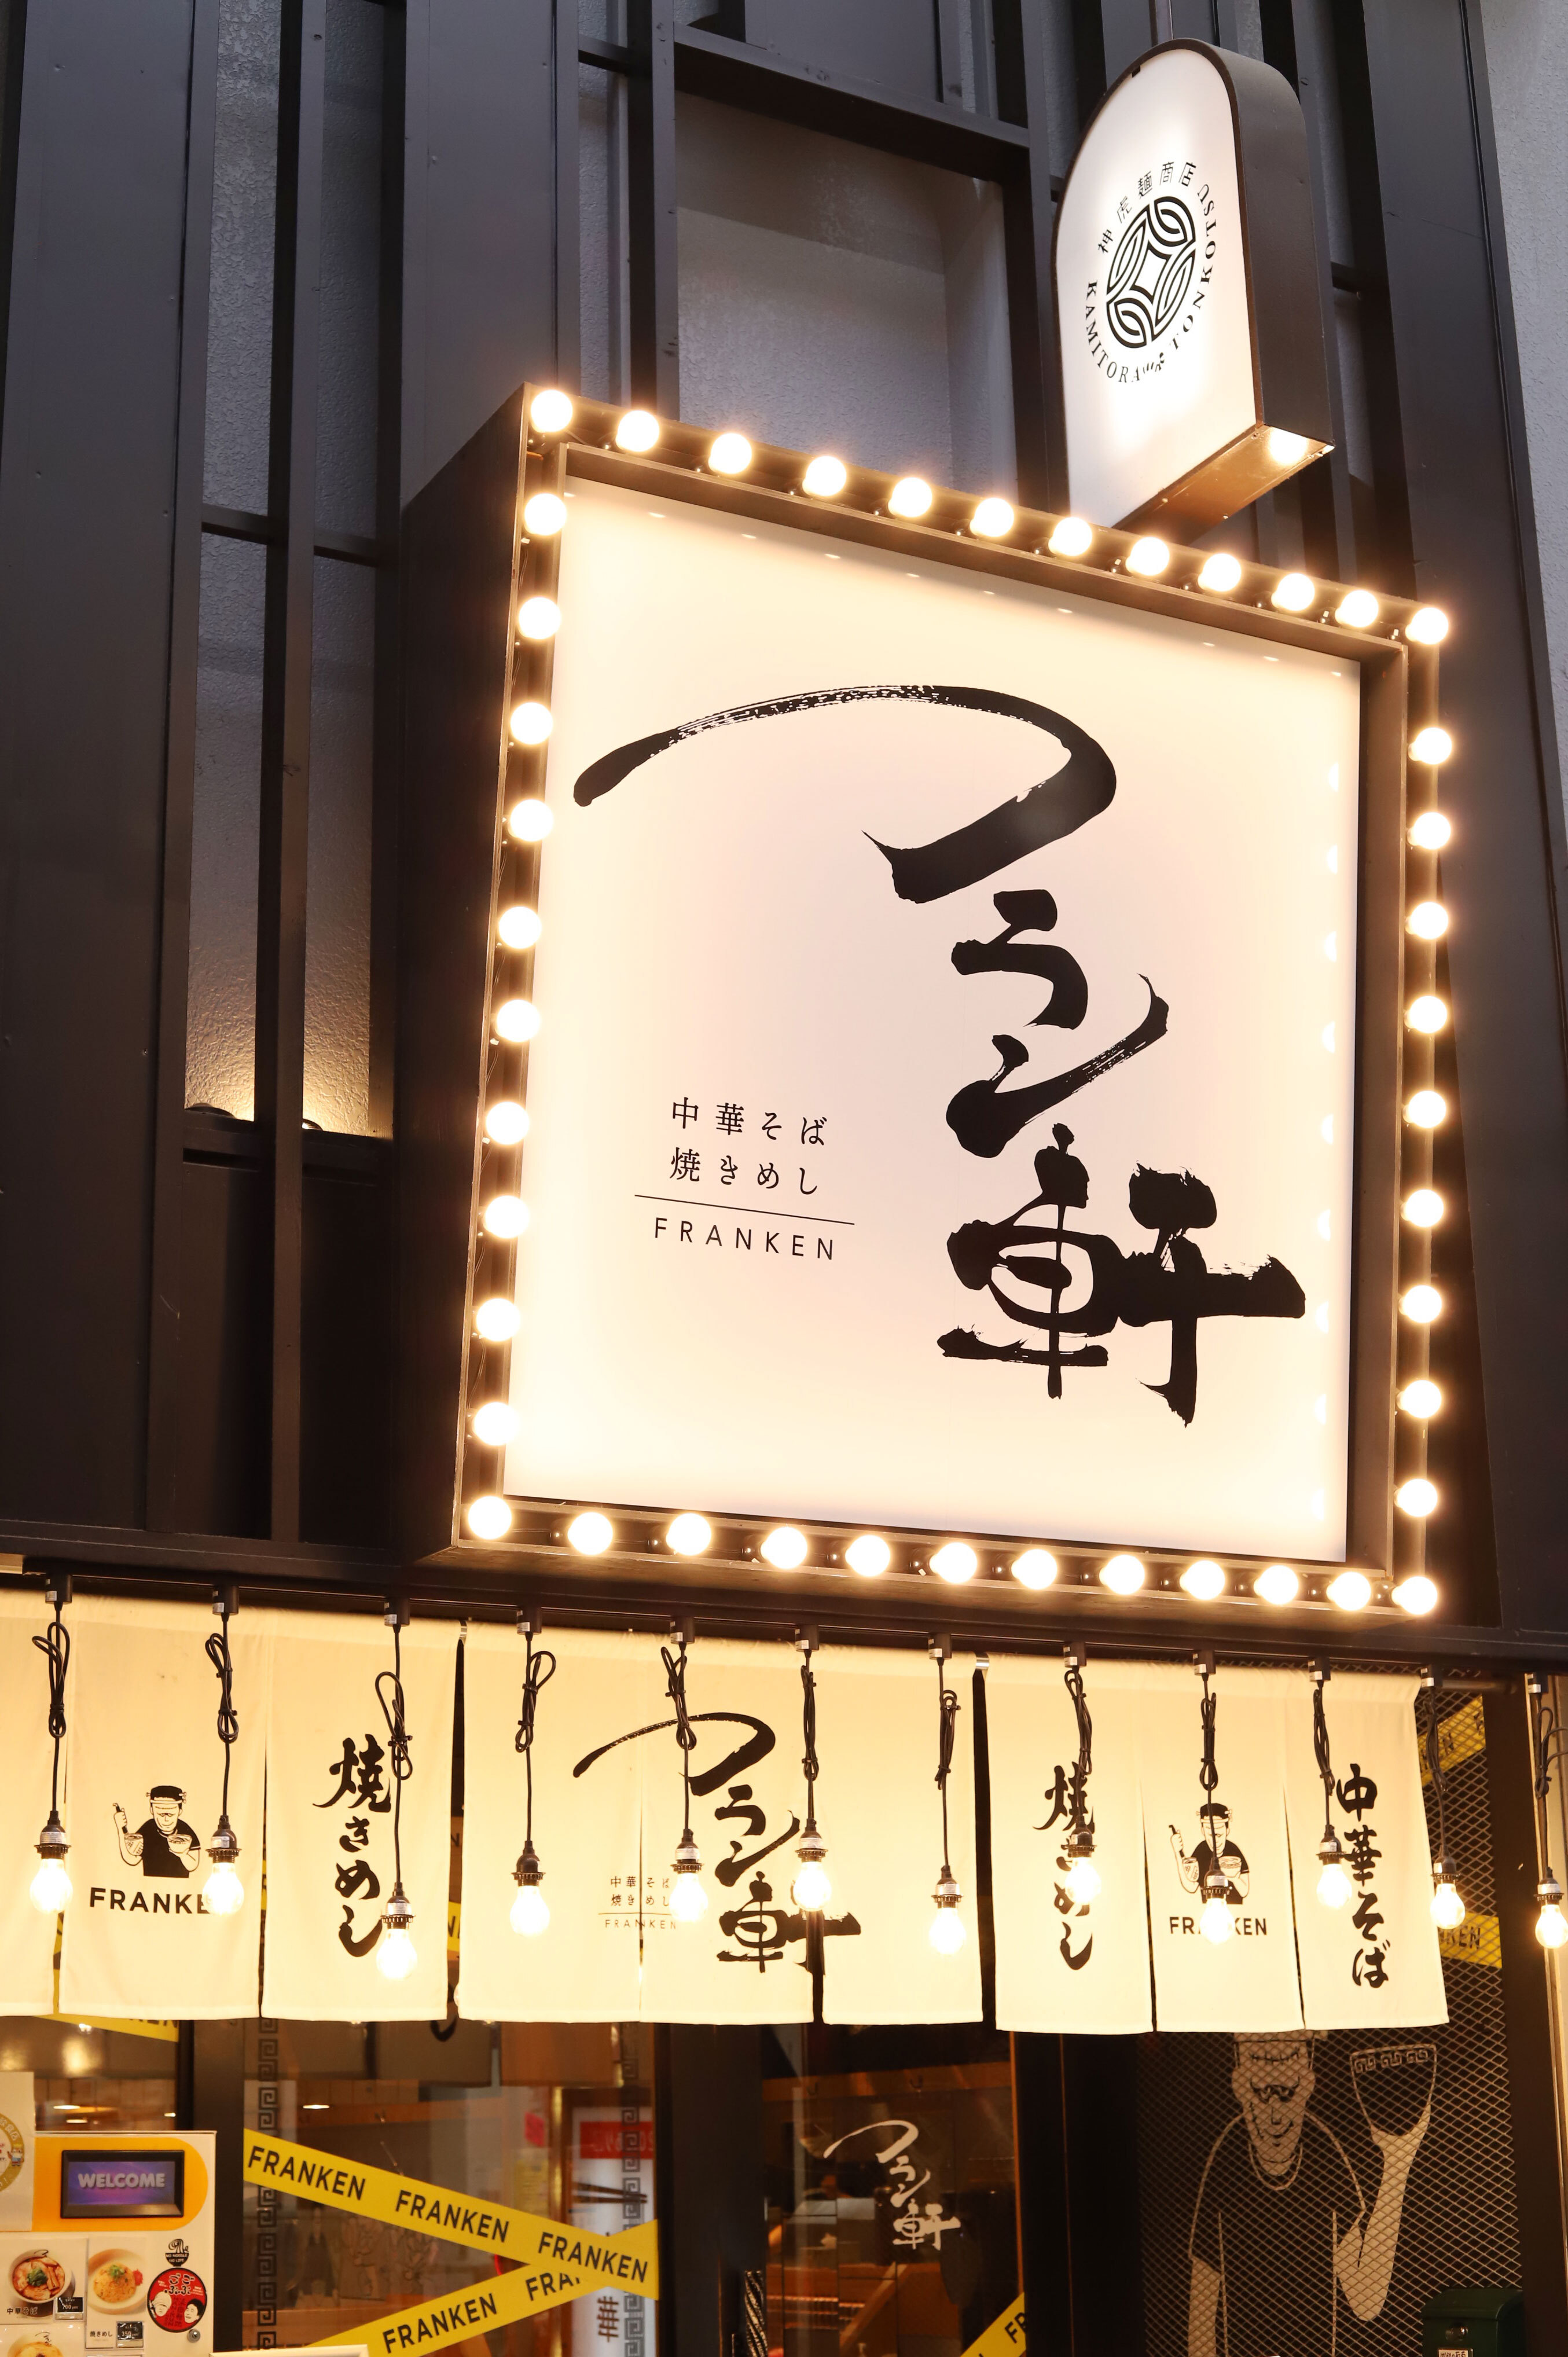 大阪本町「フラン軒」のラーメンを刷新！
豚ベースのあっさりスープにツルモチ平打ち麺　
週8回食べられる「普通の最高峰」な中華そば